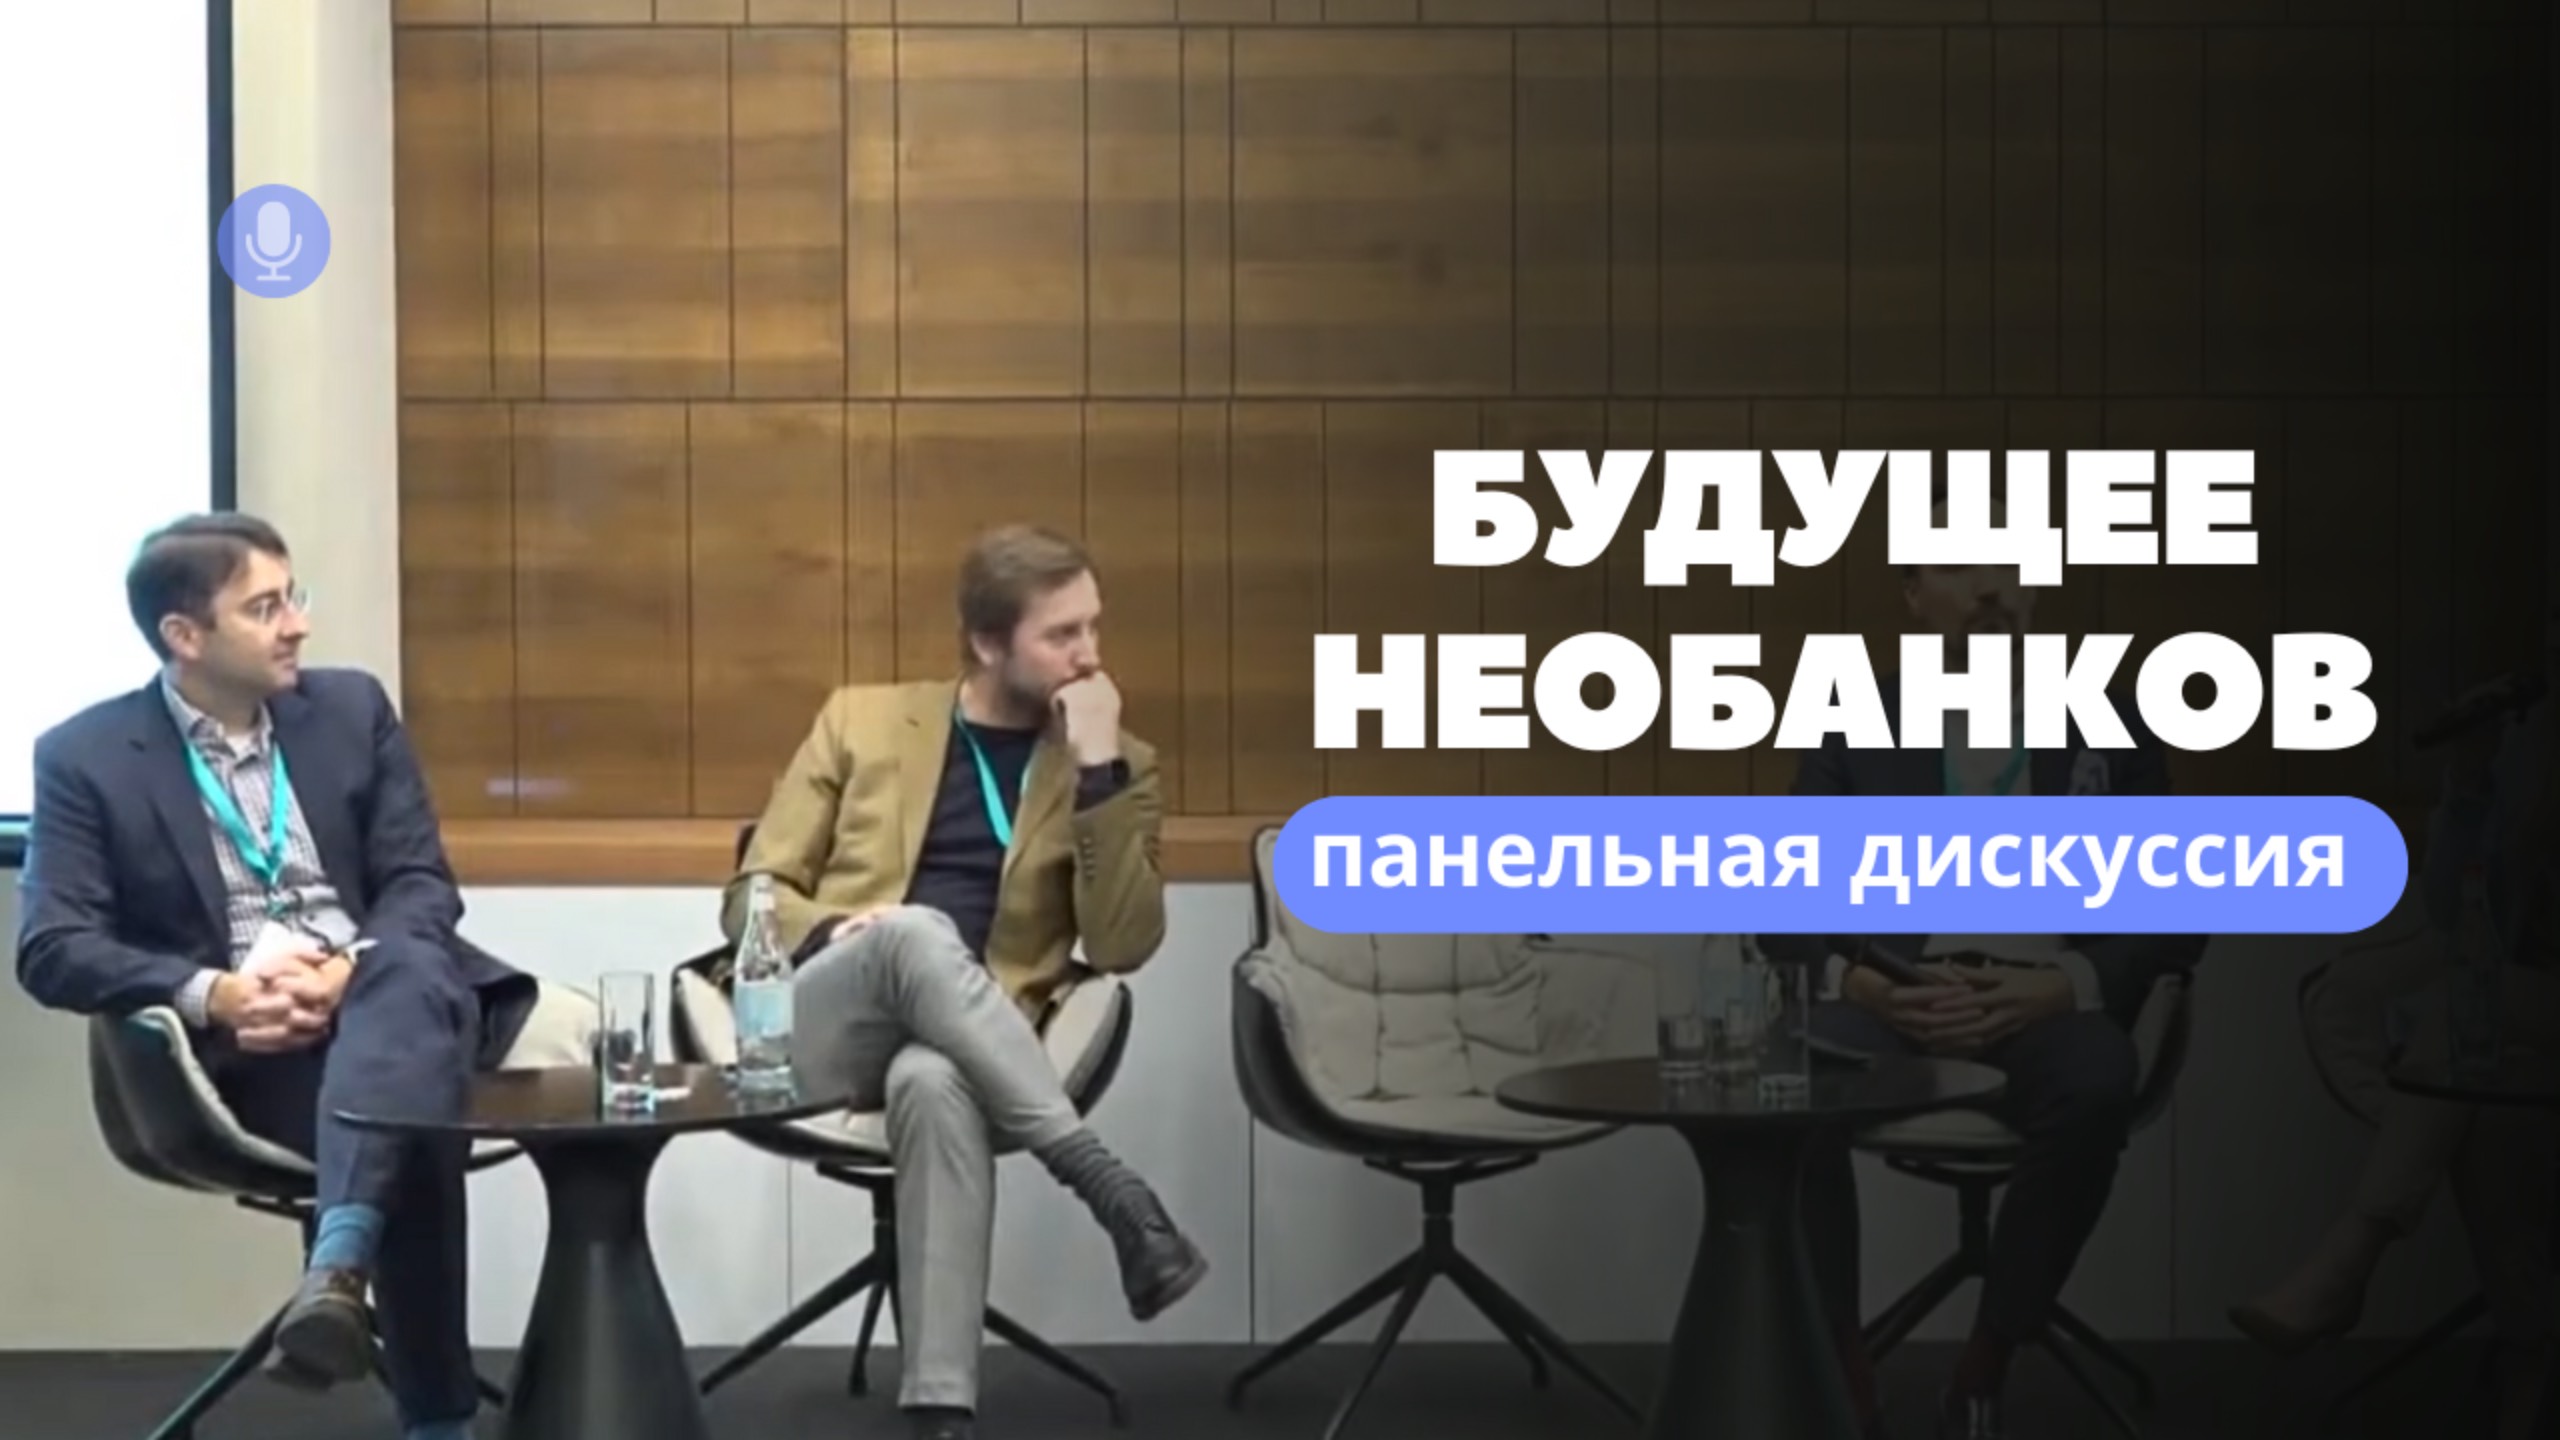 Будущее необанков, дискуссионная панель — конференция Финтех 360, Армения, Ереван, Алексей Веретенов